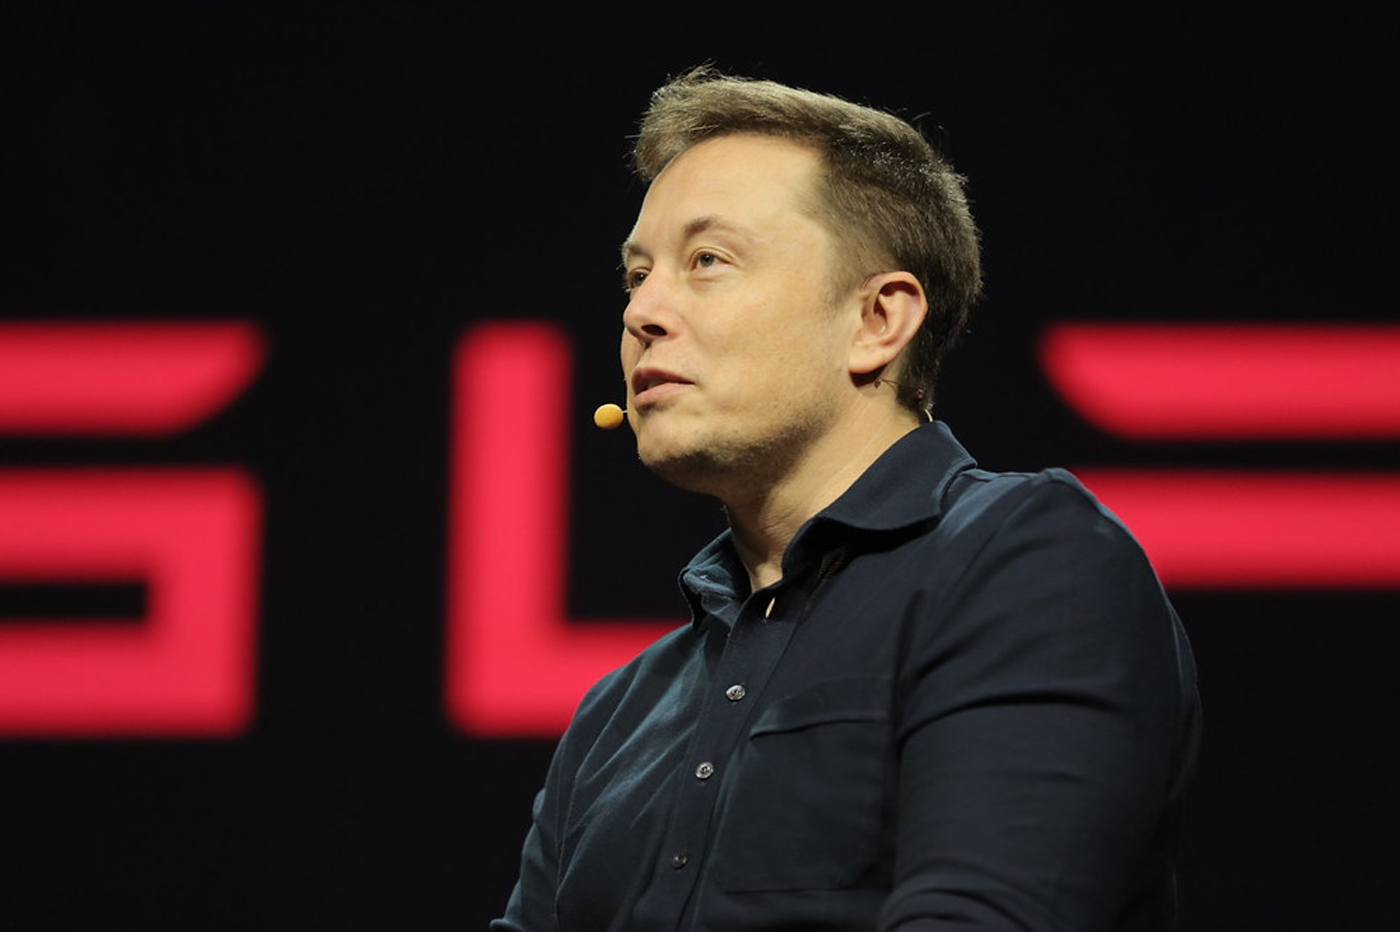 Elon Musk décrit son futur de Twitter, fait de plus de libertés, de moins d'ennui... et de licenciements